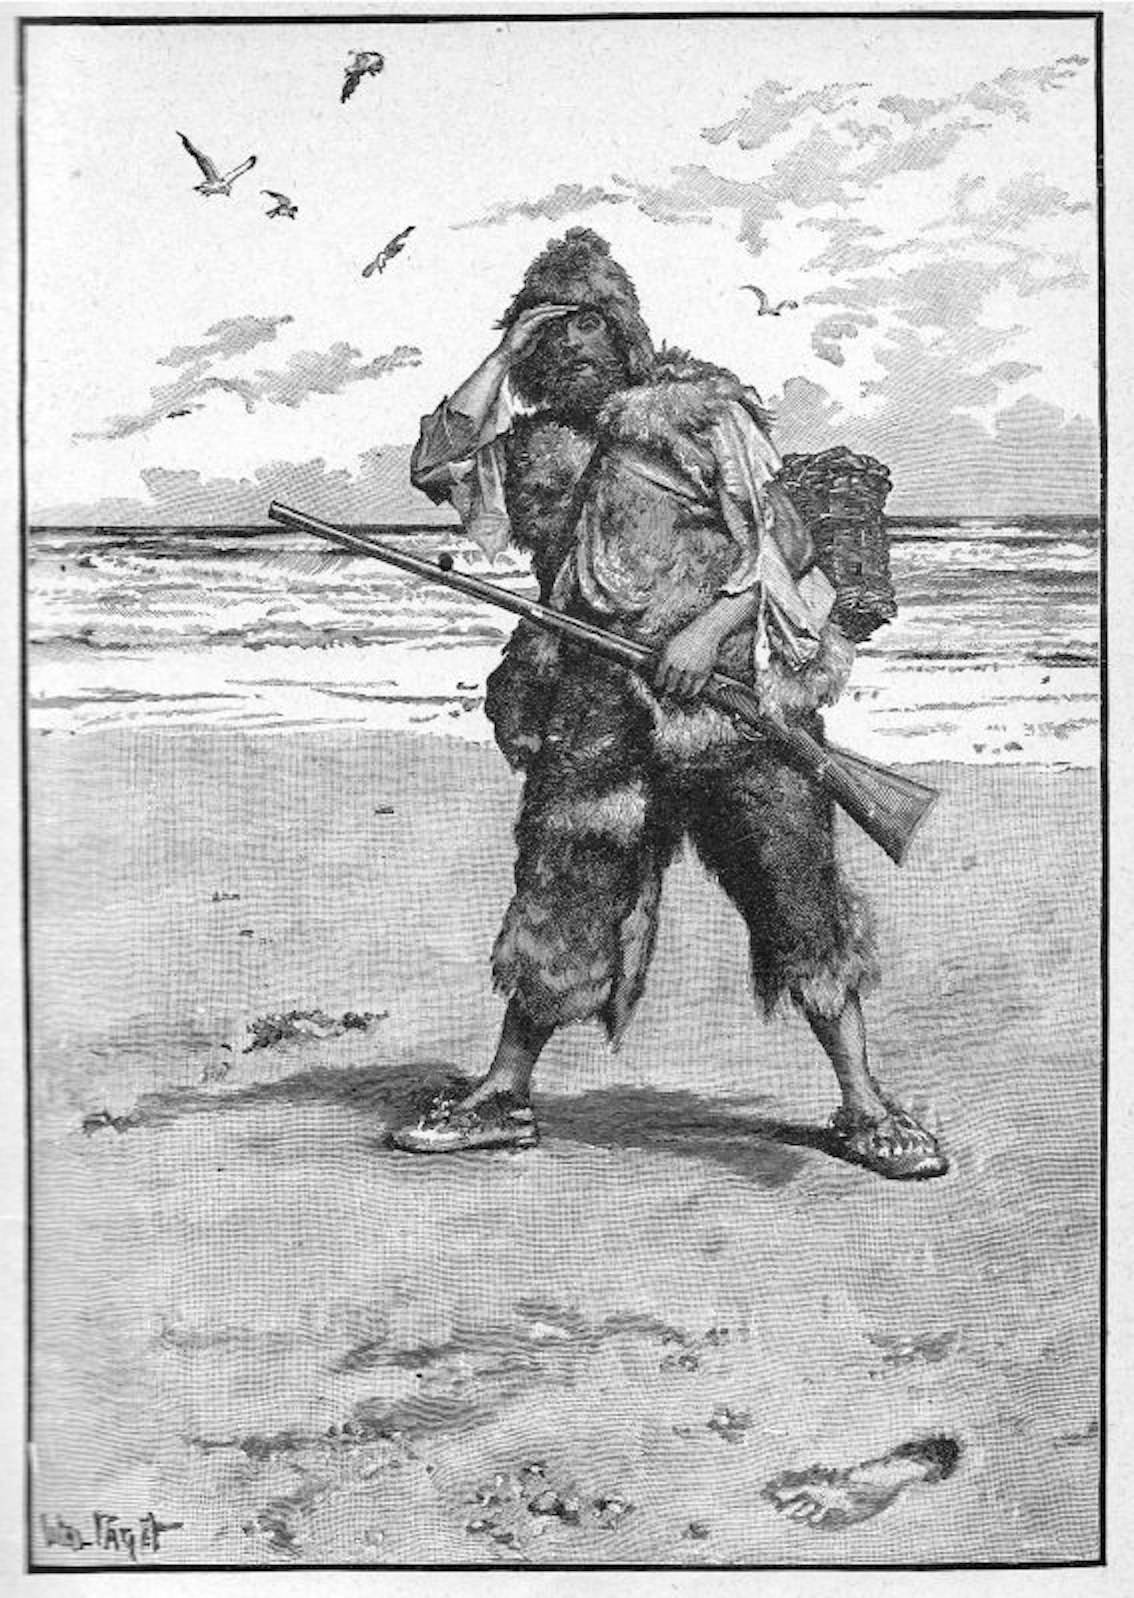 Robinson Crusoe, gezeichnet von Walter Paget